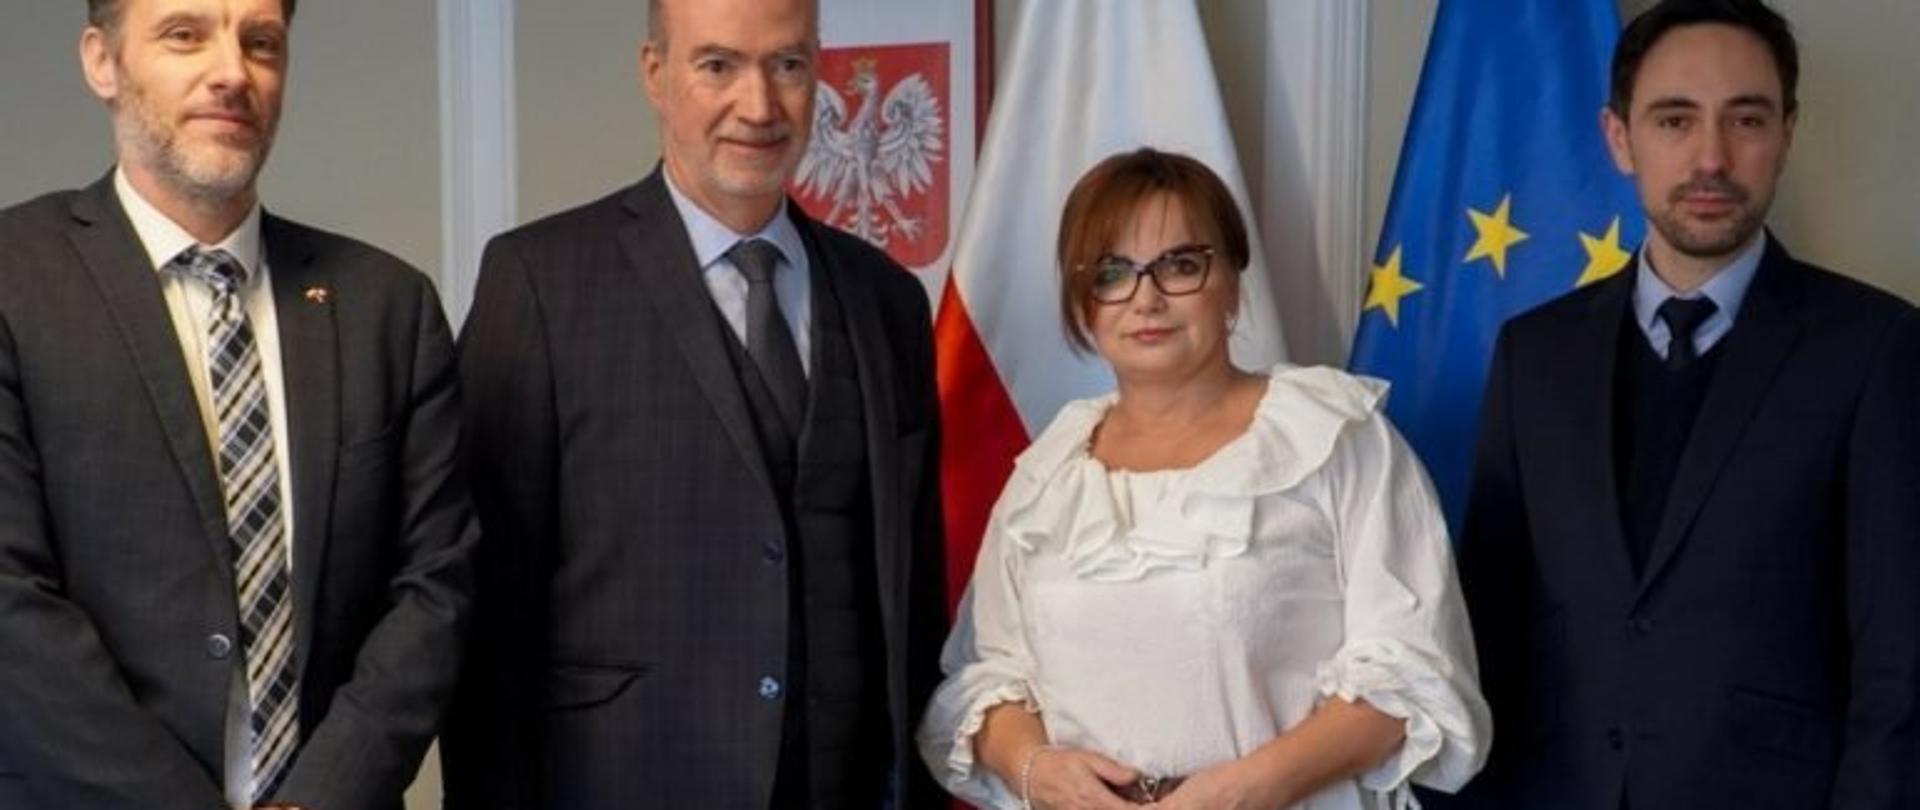 Wicewojewoda podkarpacki Jolanta Sawicka podczas kurtuazyjnej wizyta ambasadora Francji w Polsce